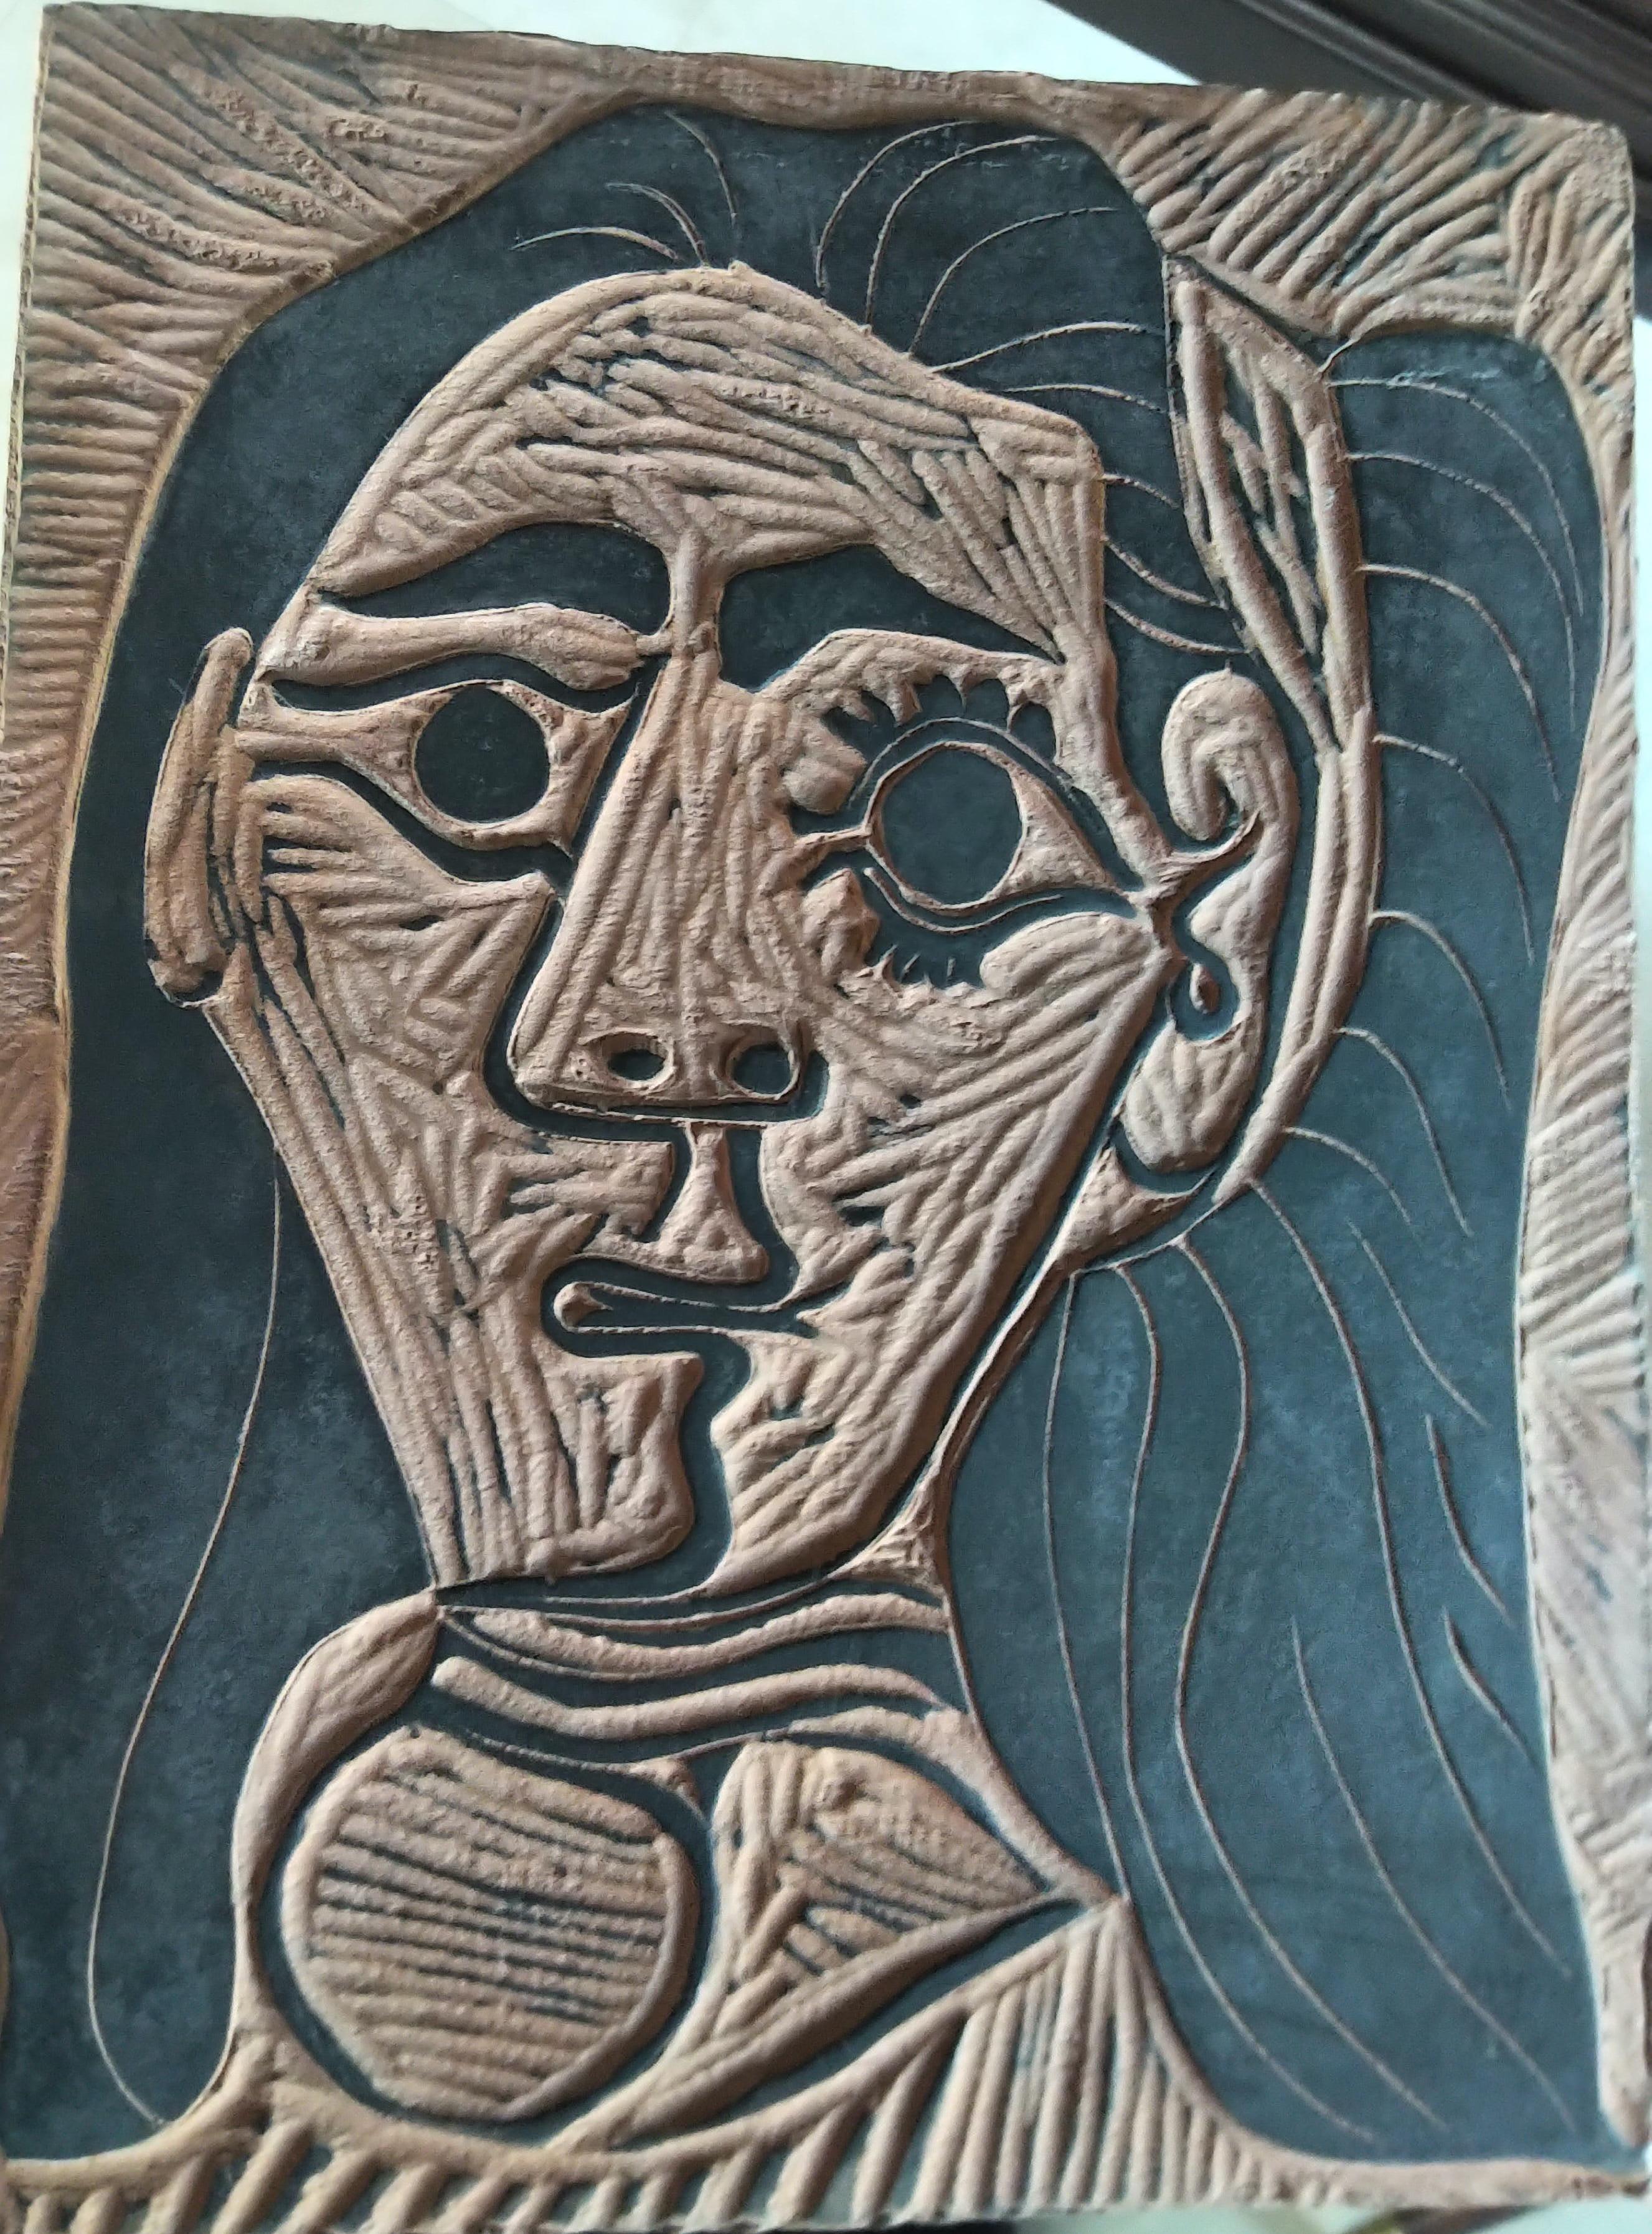 Picasso, Madoura Ceramic A.R. 520, femme aux cheveux touffus - Sculpture de Pablo Picasso